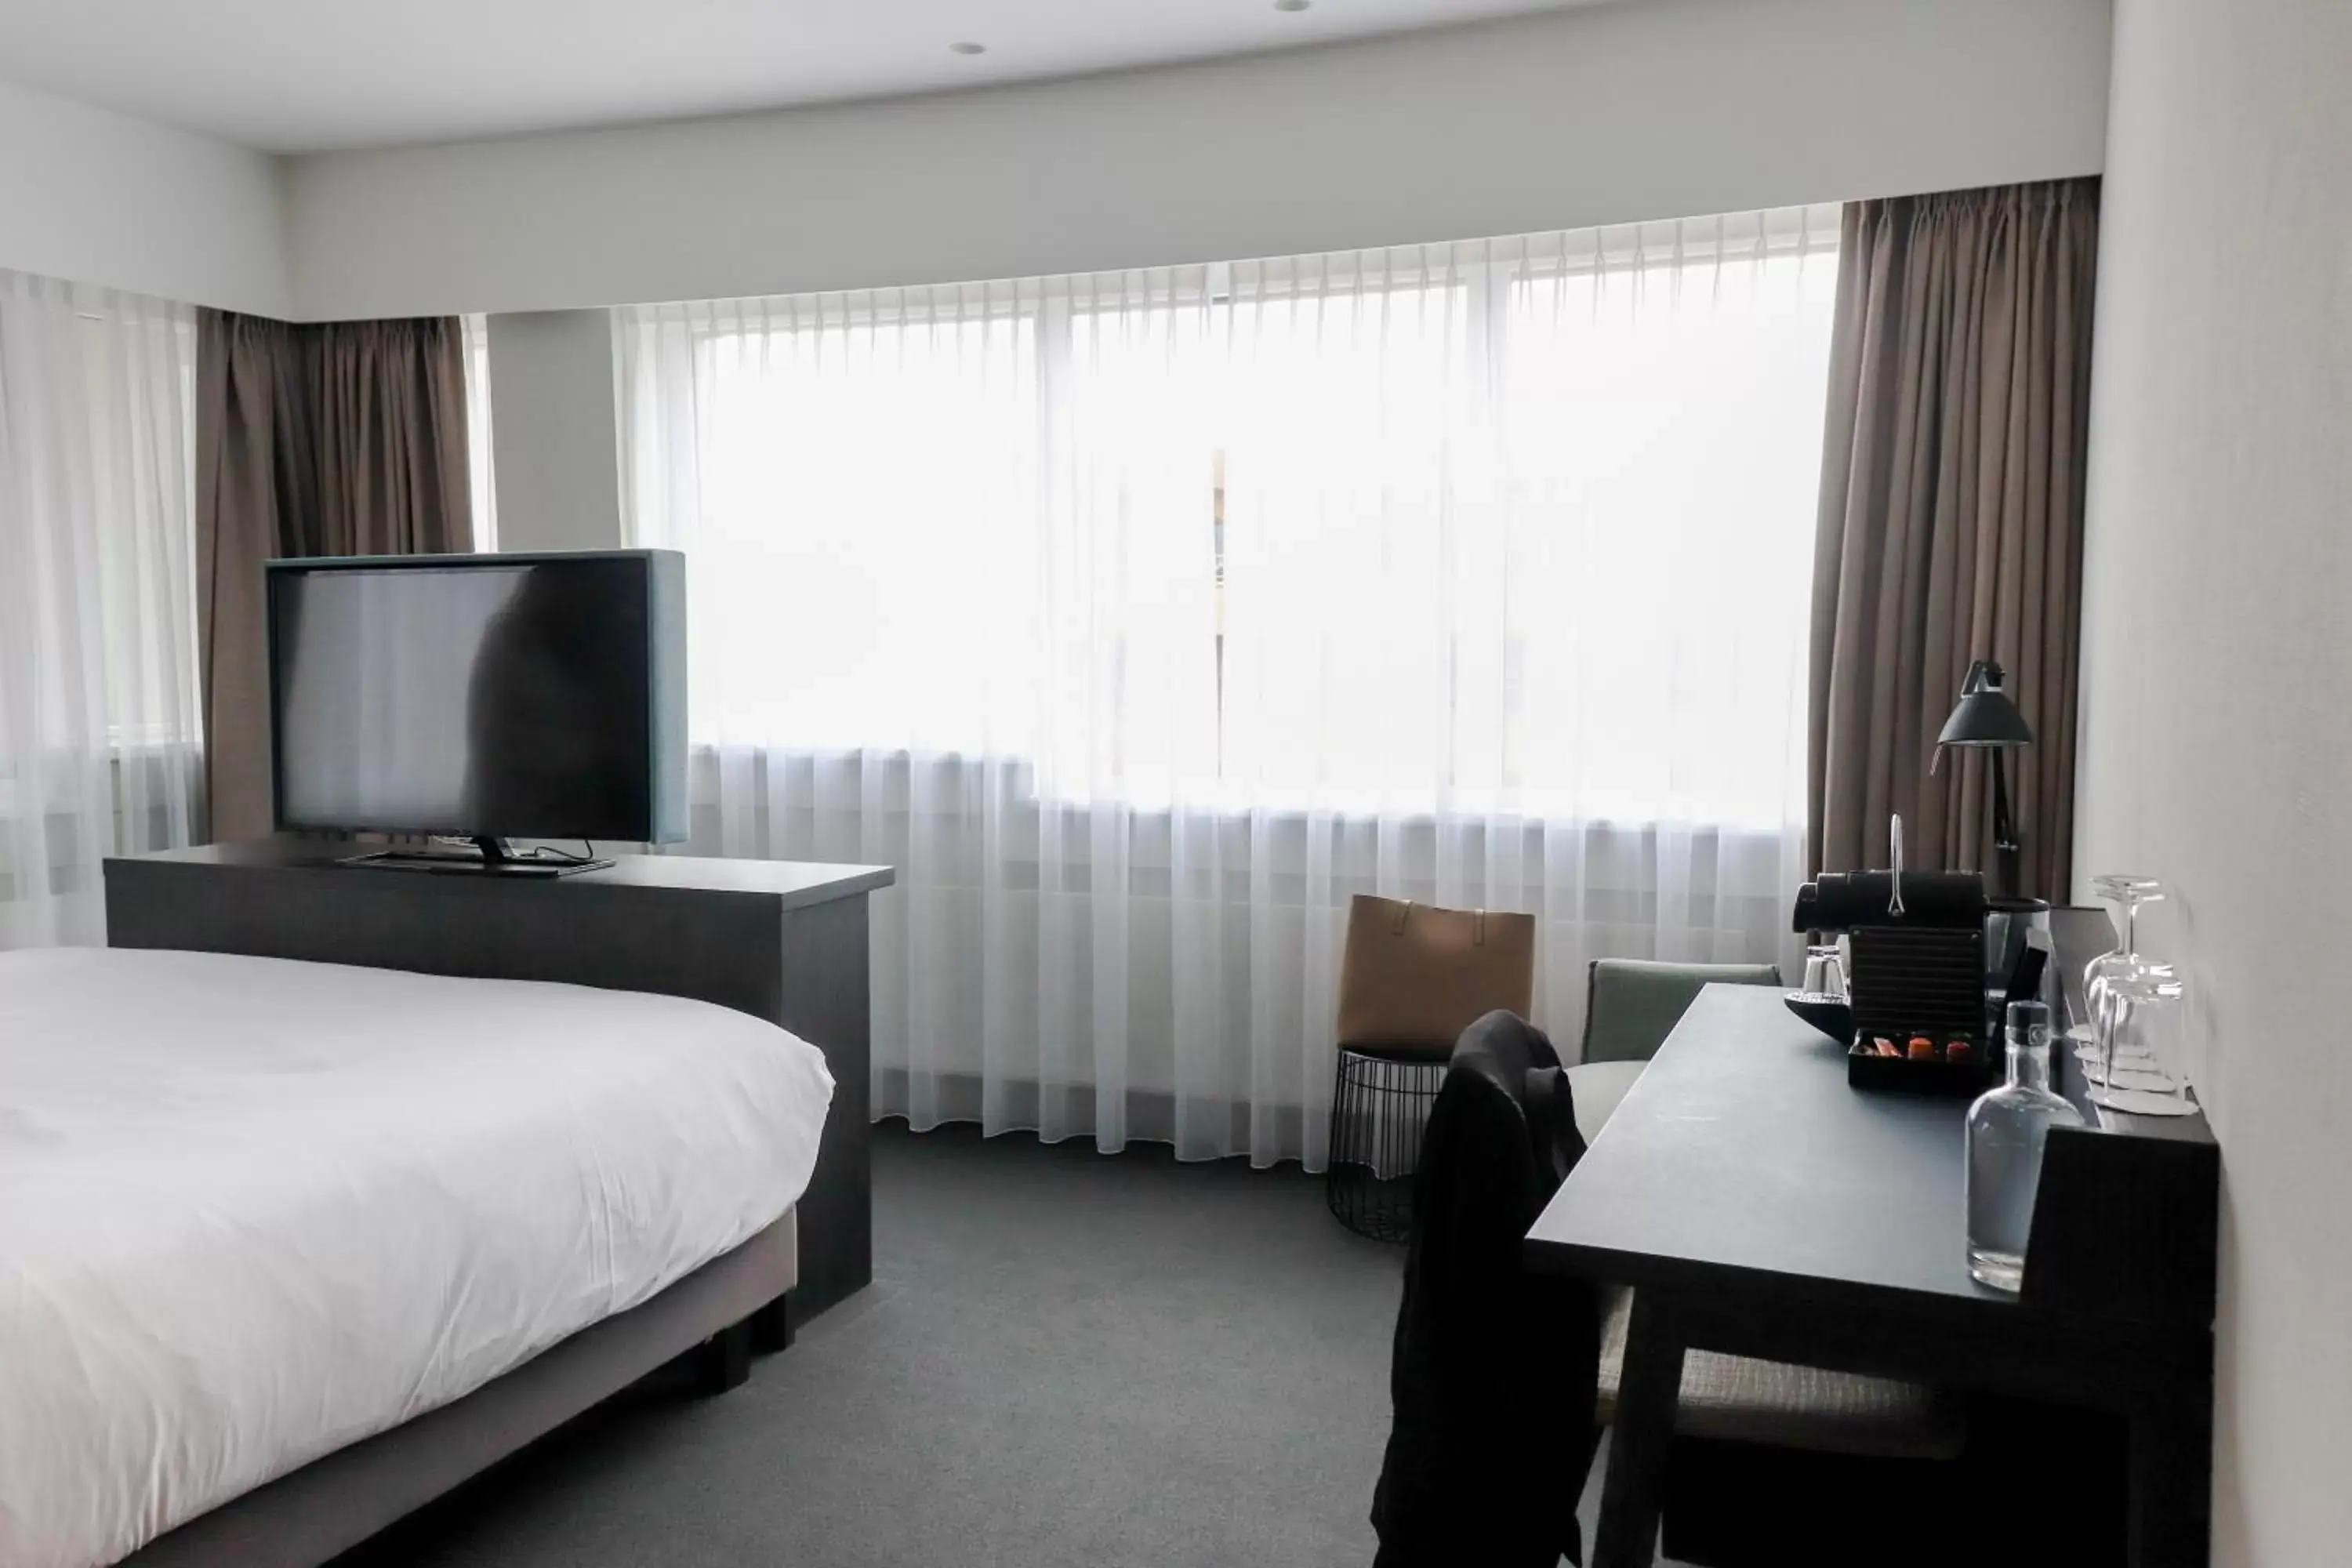 Bedroom, TV/Entertainment Center in Mercure Hotel Tilburg Centrum